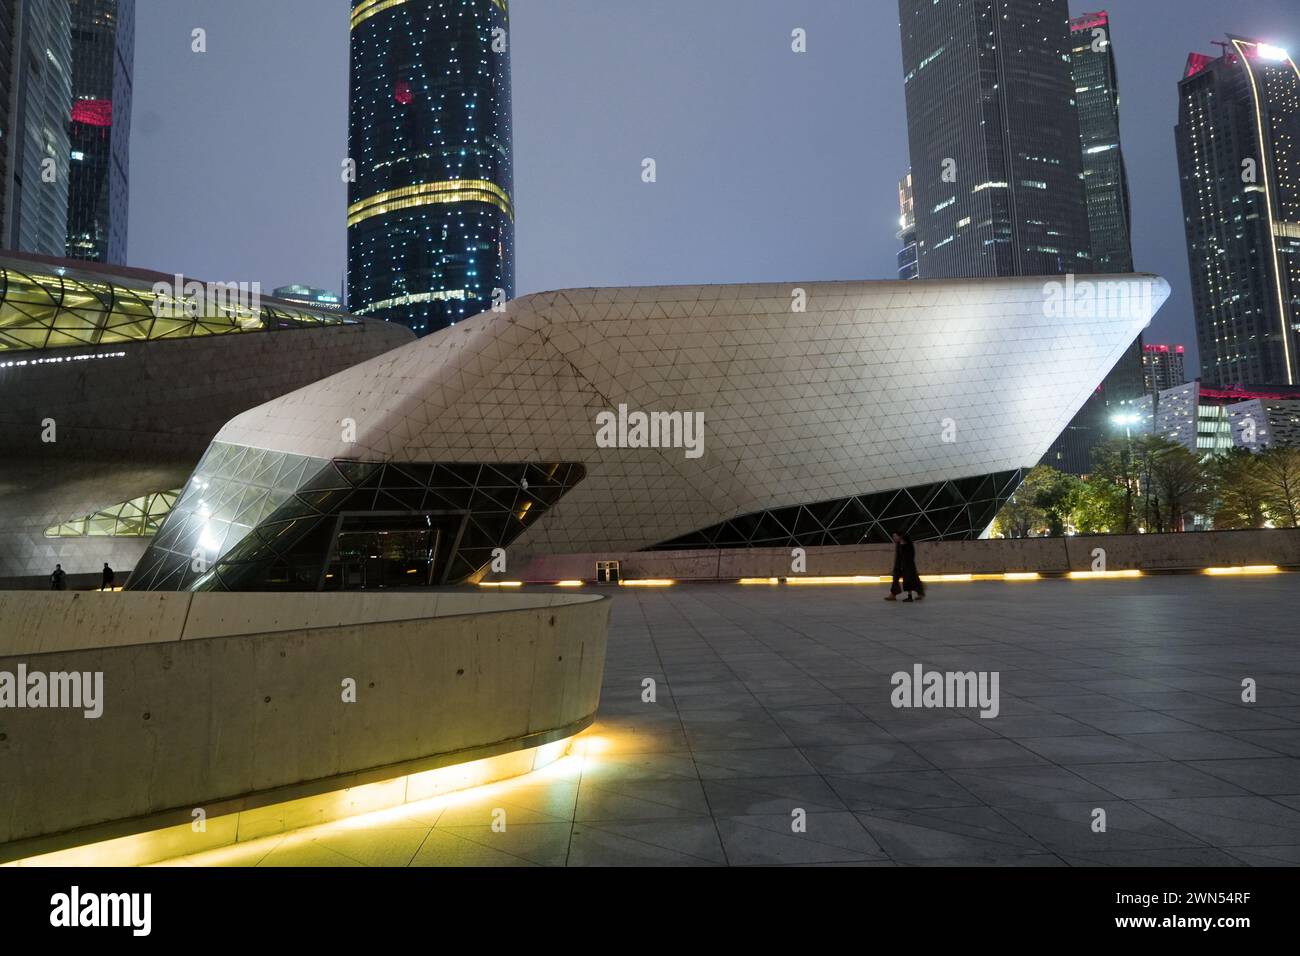 Il Teatro dell'Opera di Guangzhou, uno dei nuovi punti di riferimento di Guangzhou, progettato dall'architetto Zaha Hadid. Guangzhou, Cina - 24 febbraio 2024 Foto Stock